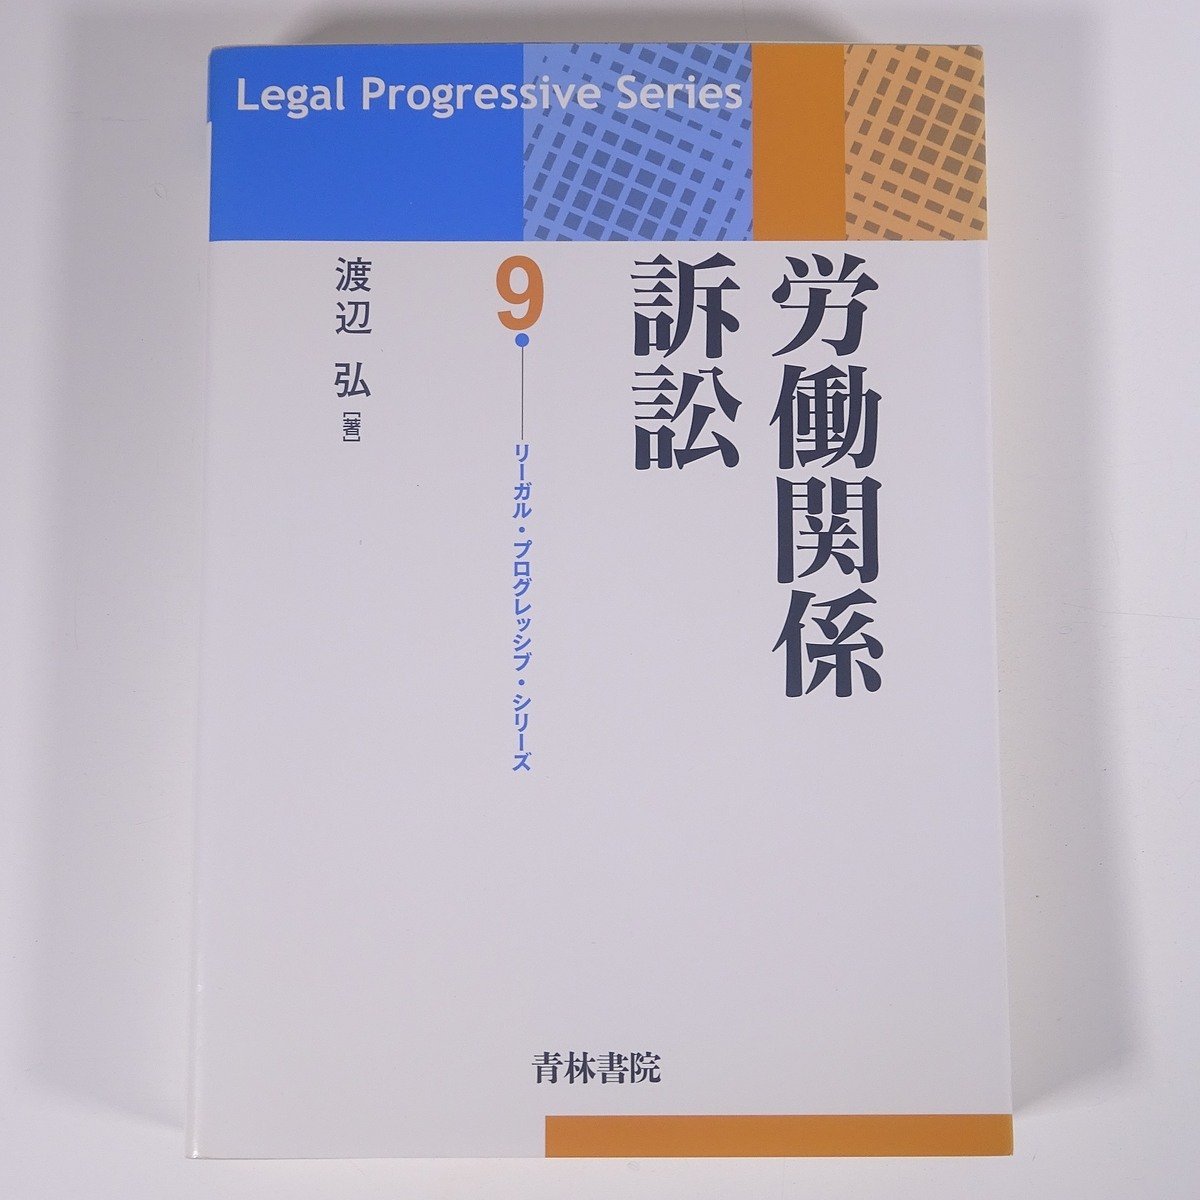 労働関係訴訟 渡辺弘 青林書院 2010 単行本 法律 裁判_画像1